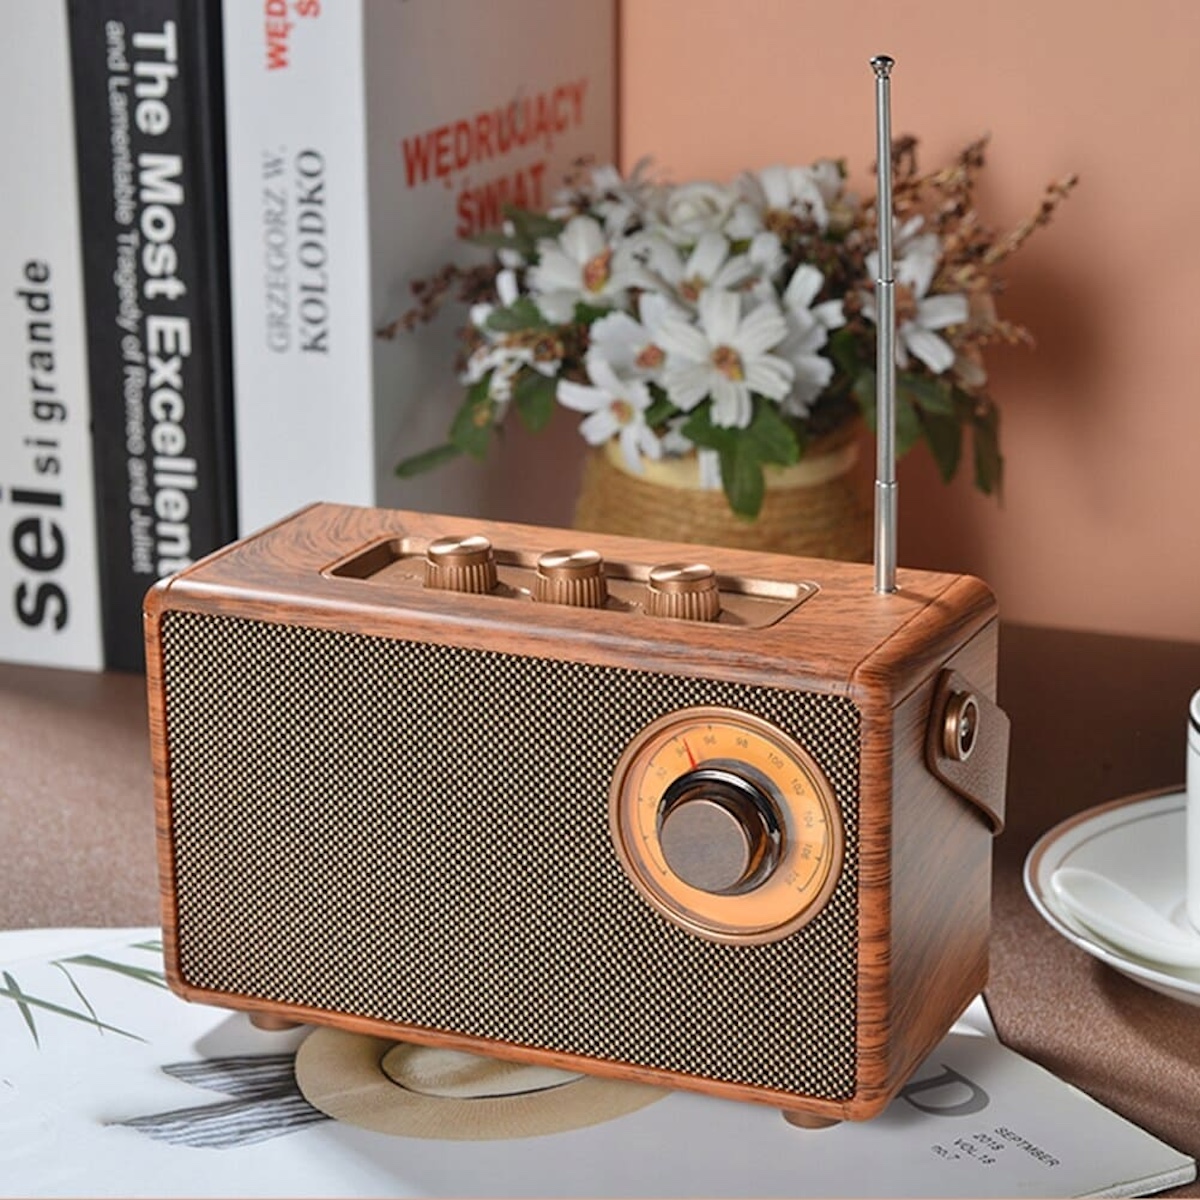 پخش کننده رادیو در طرح رترو مینی کوچک چوبی قدیمی